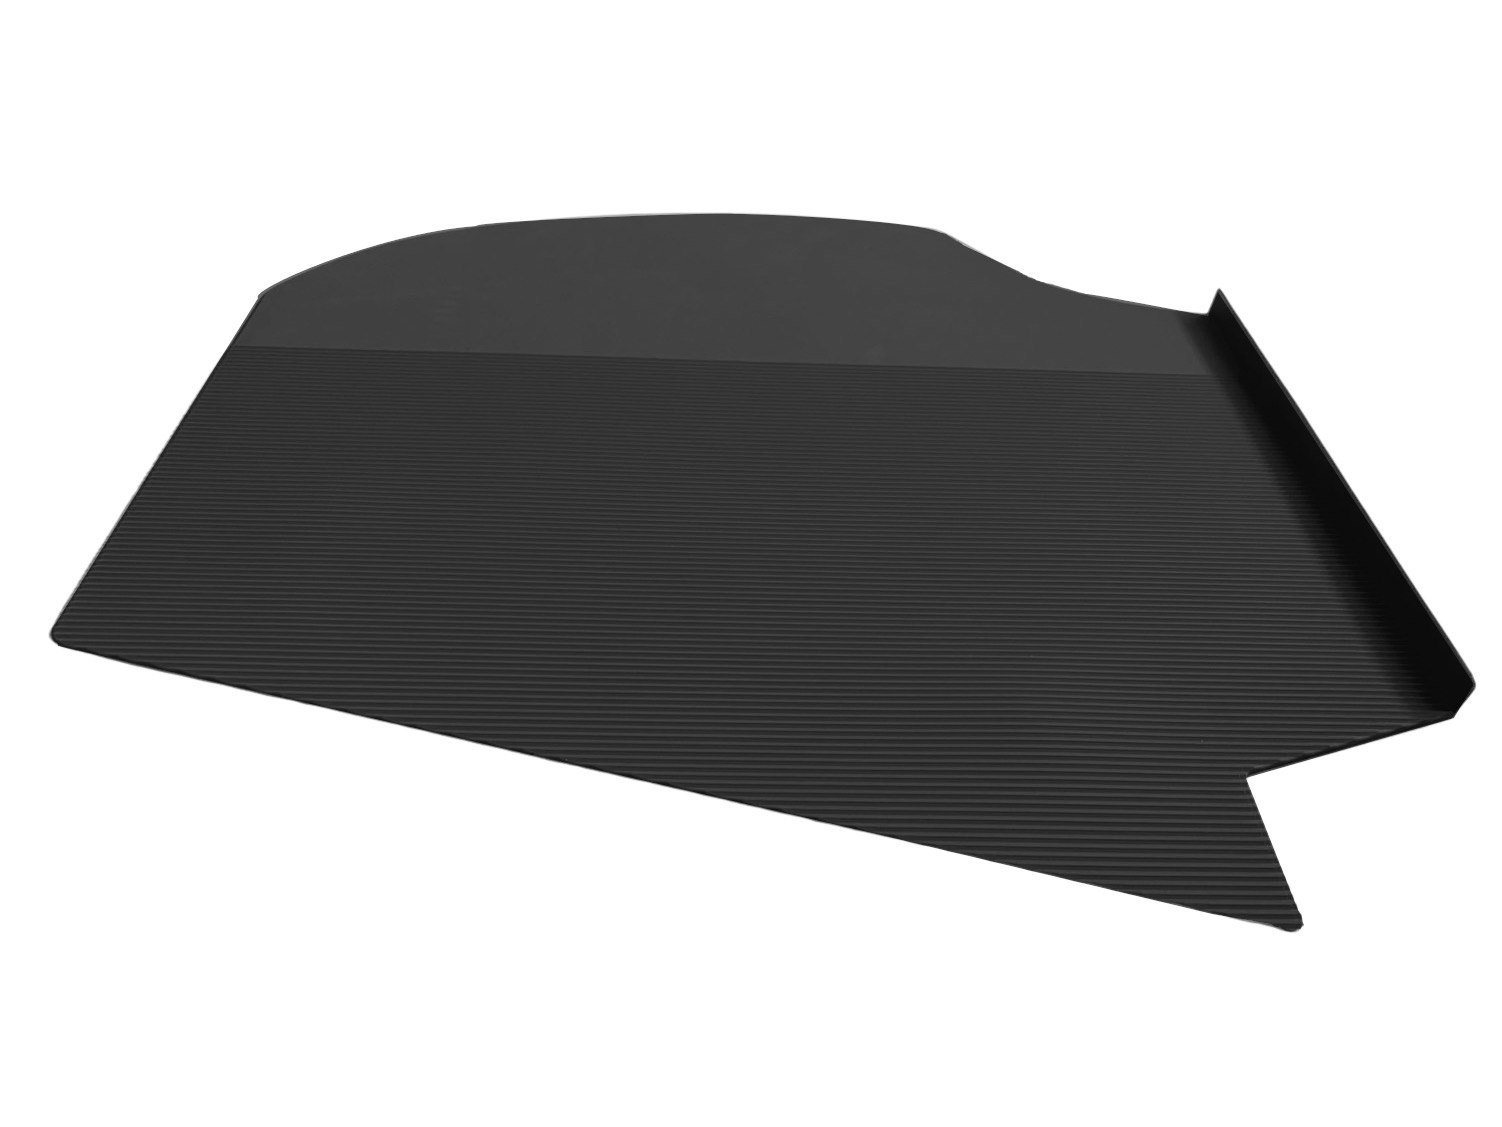 Kit 5: Rubber floor mats for inner wheel arch inside the car for Saab 92, 93, 95 & 96 . Black